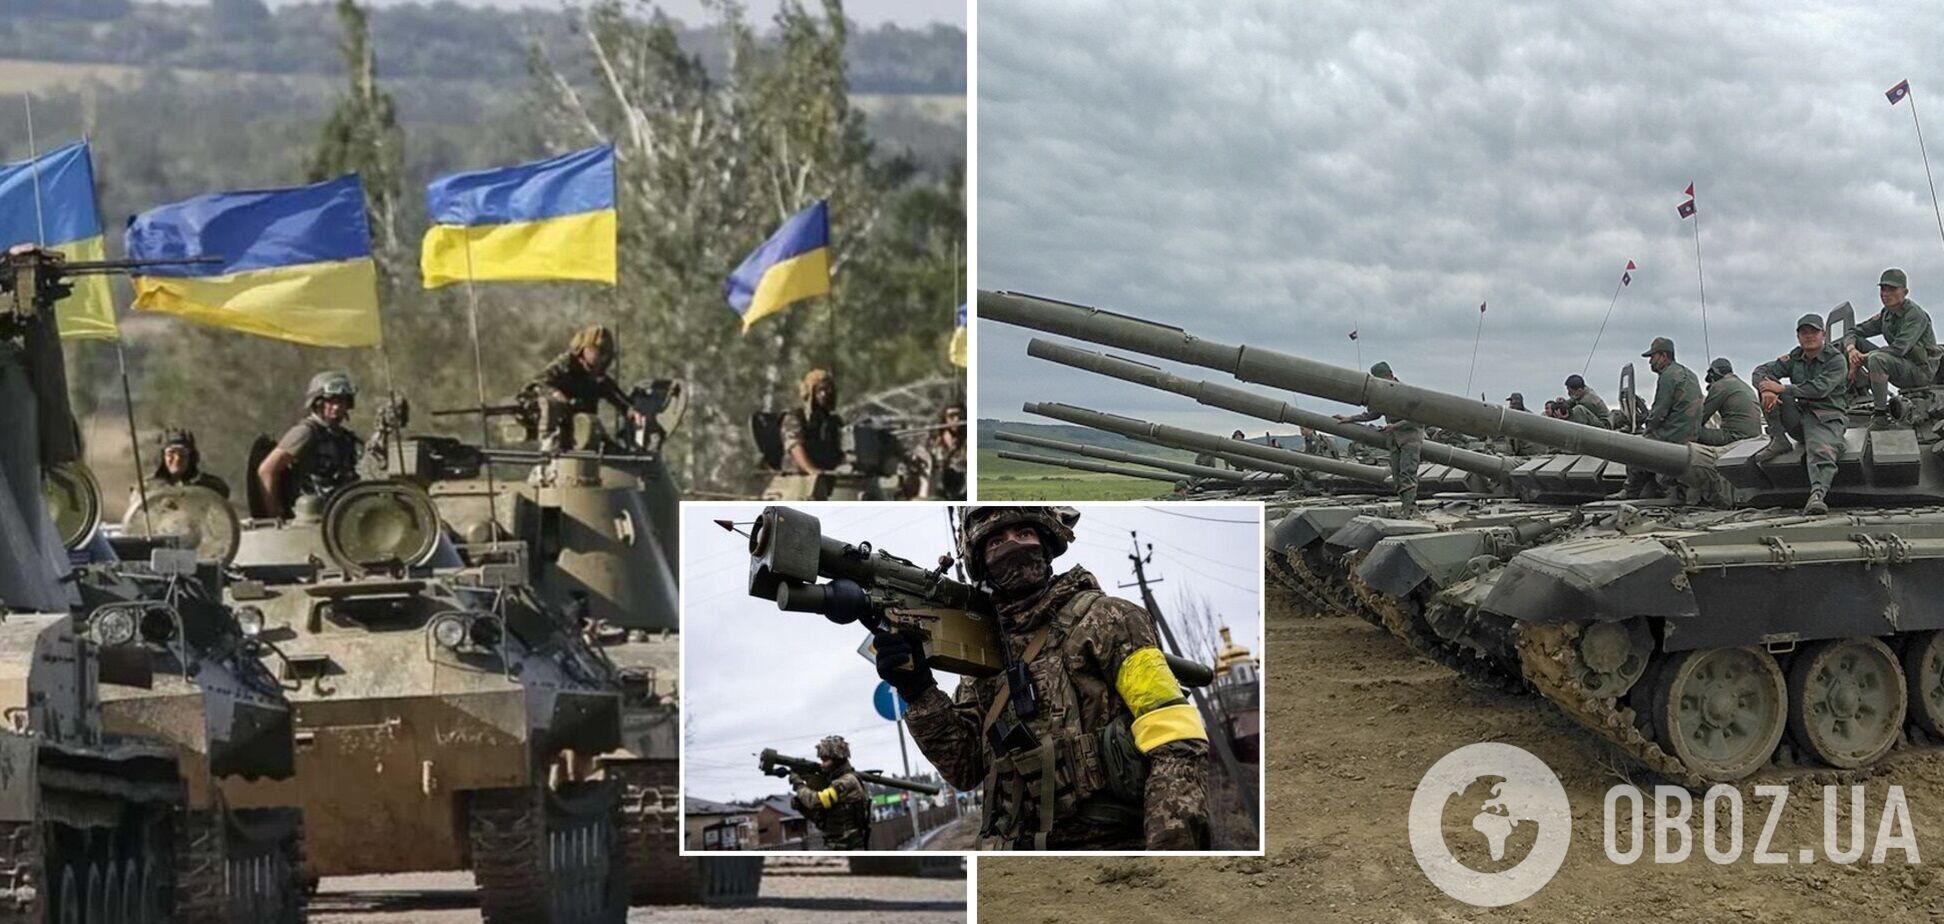 Следующие недели будут 'критическими': военный аналитик назвал три возможных сценария развития ситуации на Донбассе